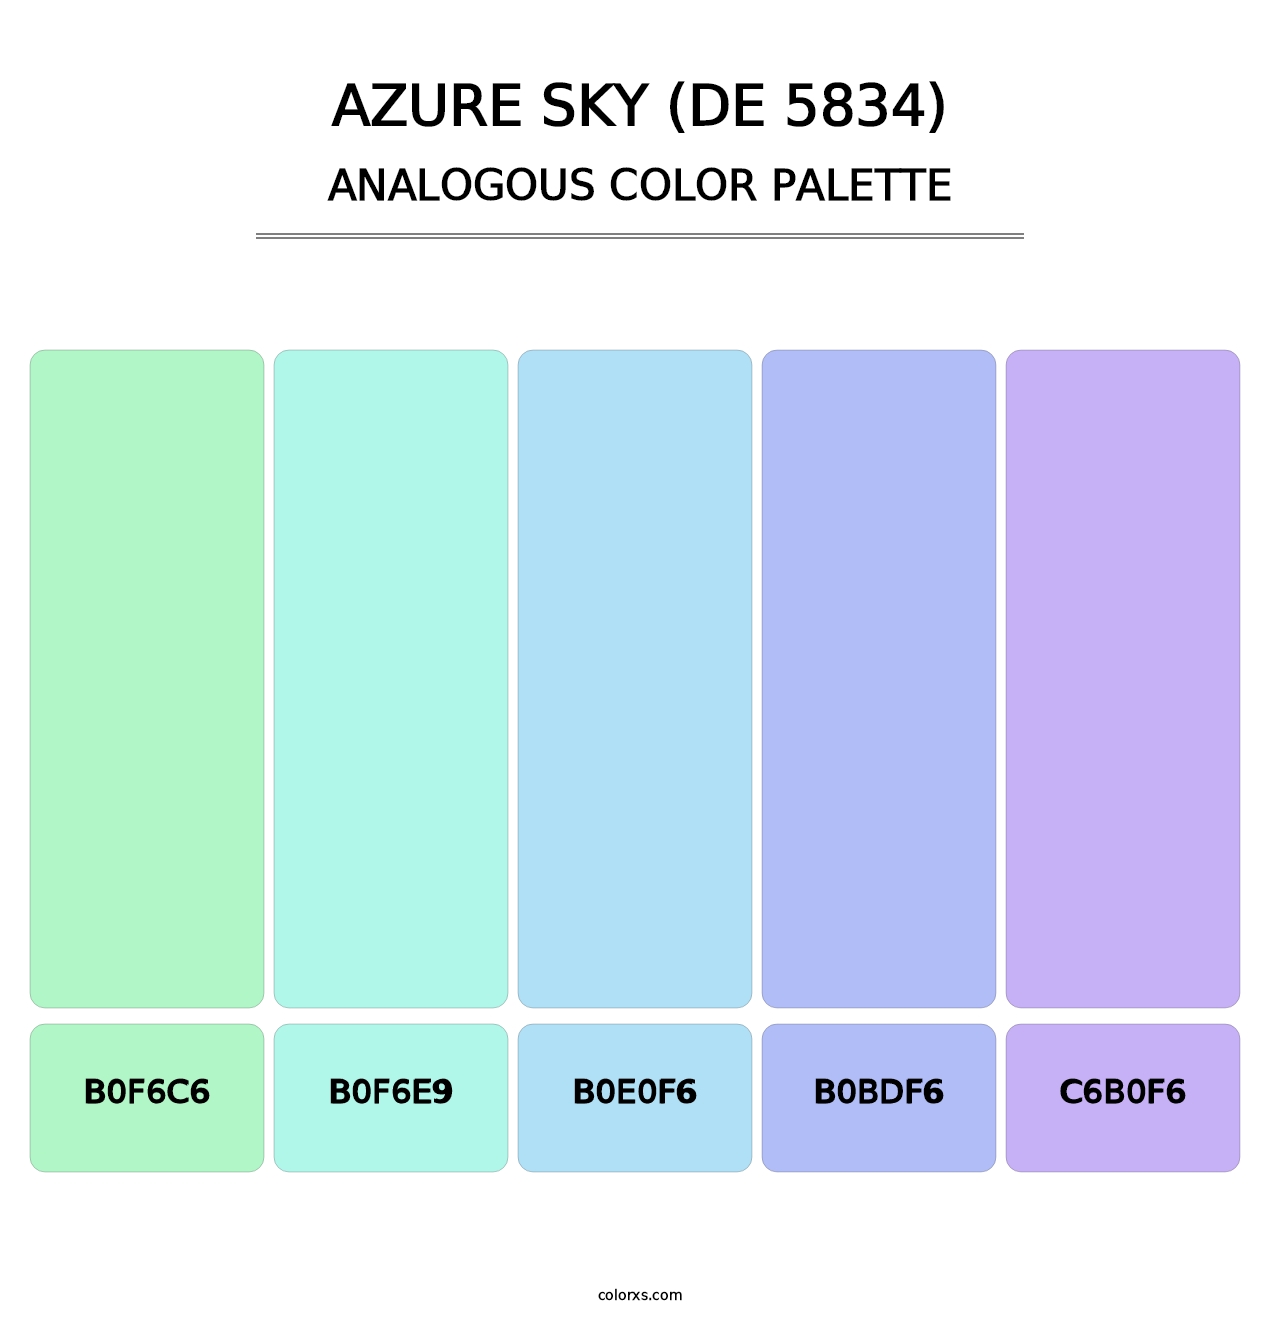 Azure Sky (DE 5834) - Analogous Color Palette